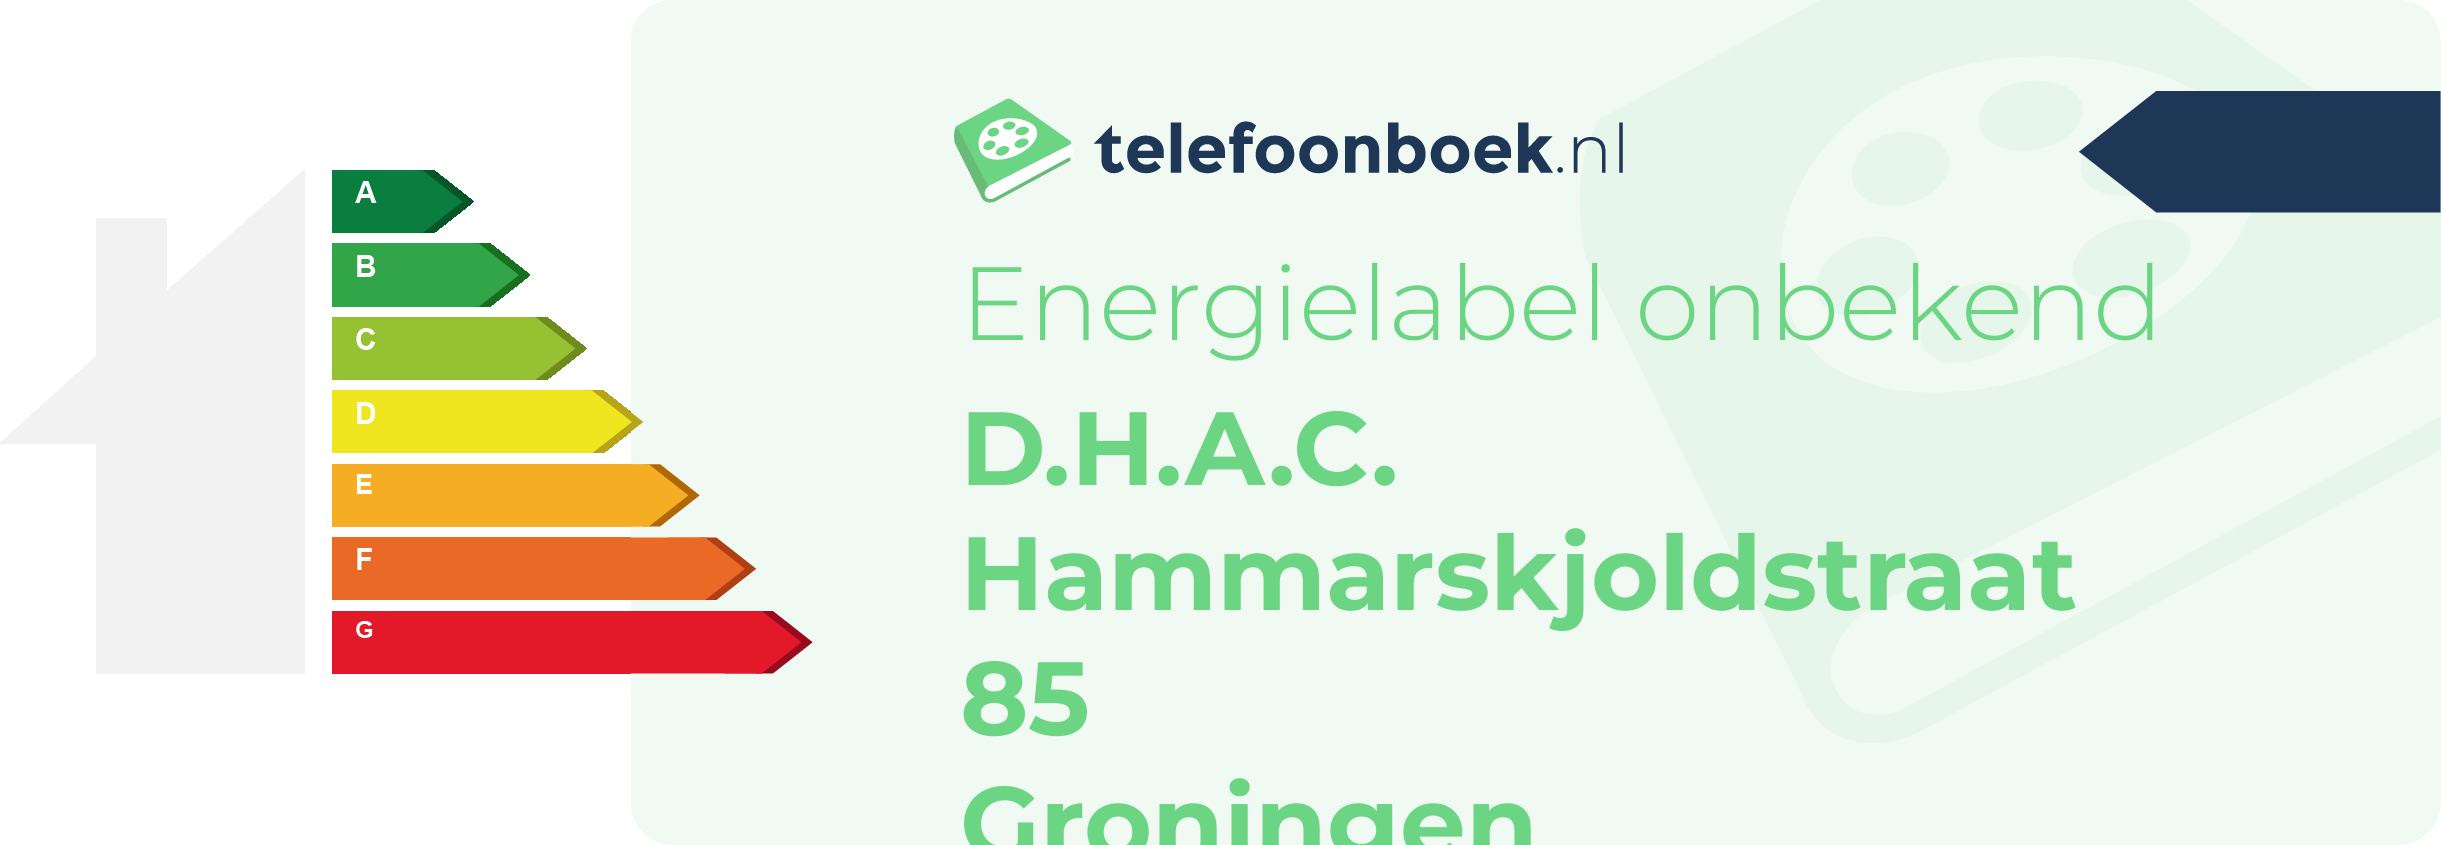 Energielabel D.H.A.C. Hammarskjoldstraat 85 Groningen